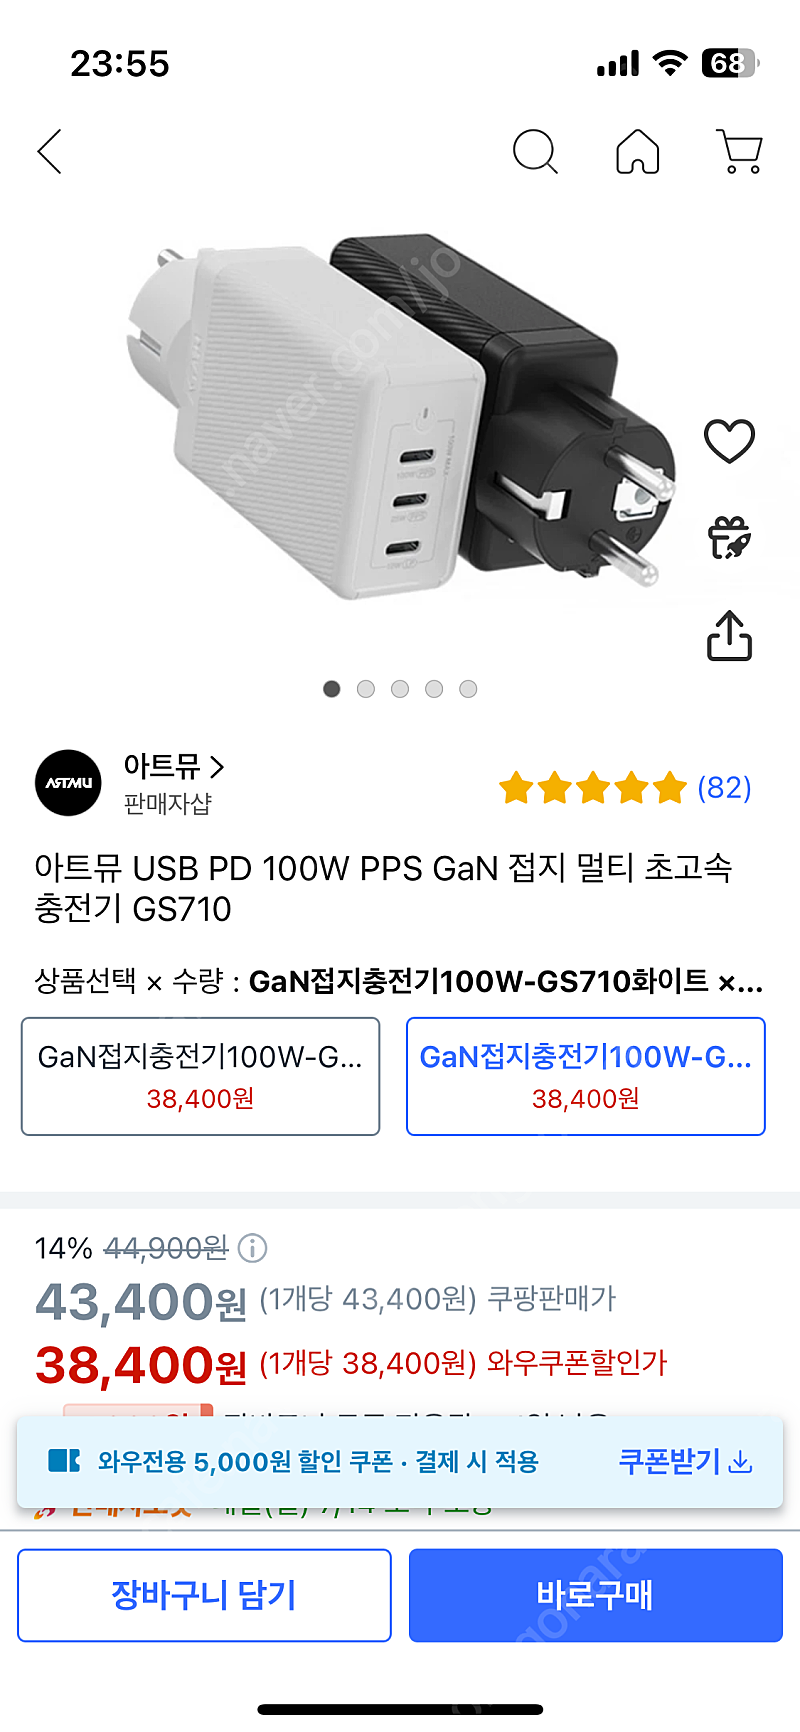 아트뮤 USB PD 100W PPS GaN 접지 멀티 초고속 충전기 GS710 판매합니다!